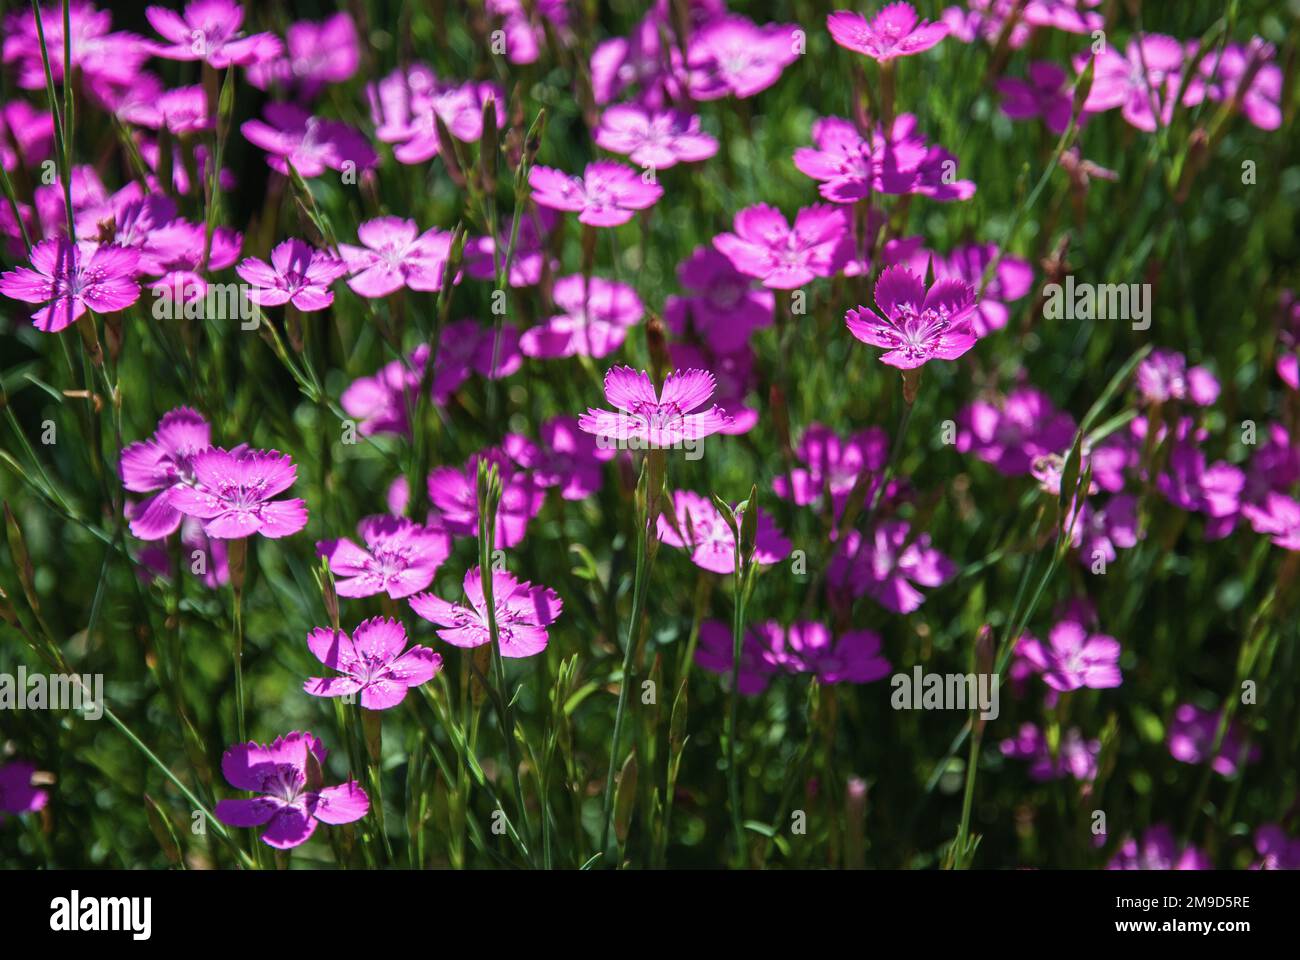 Maiden pink flowers, Dianthus deltoides in summer garden Stock Photo